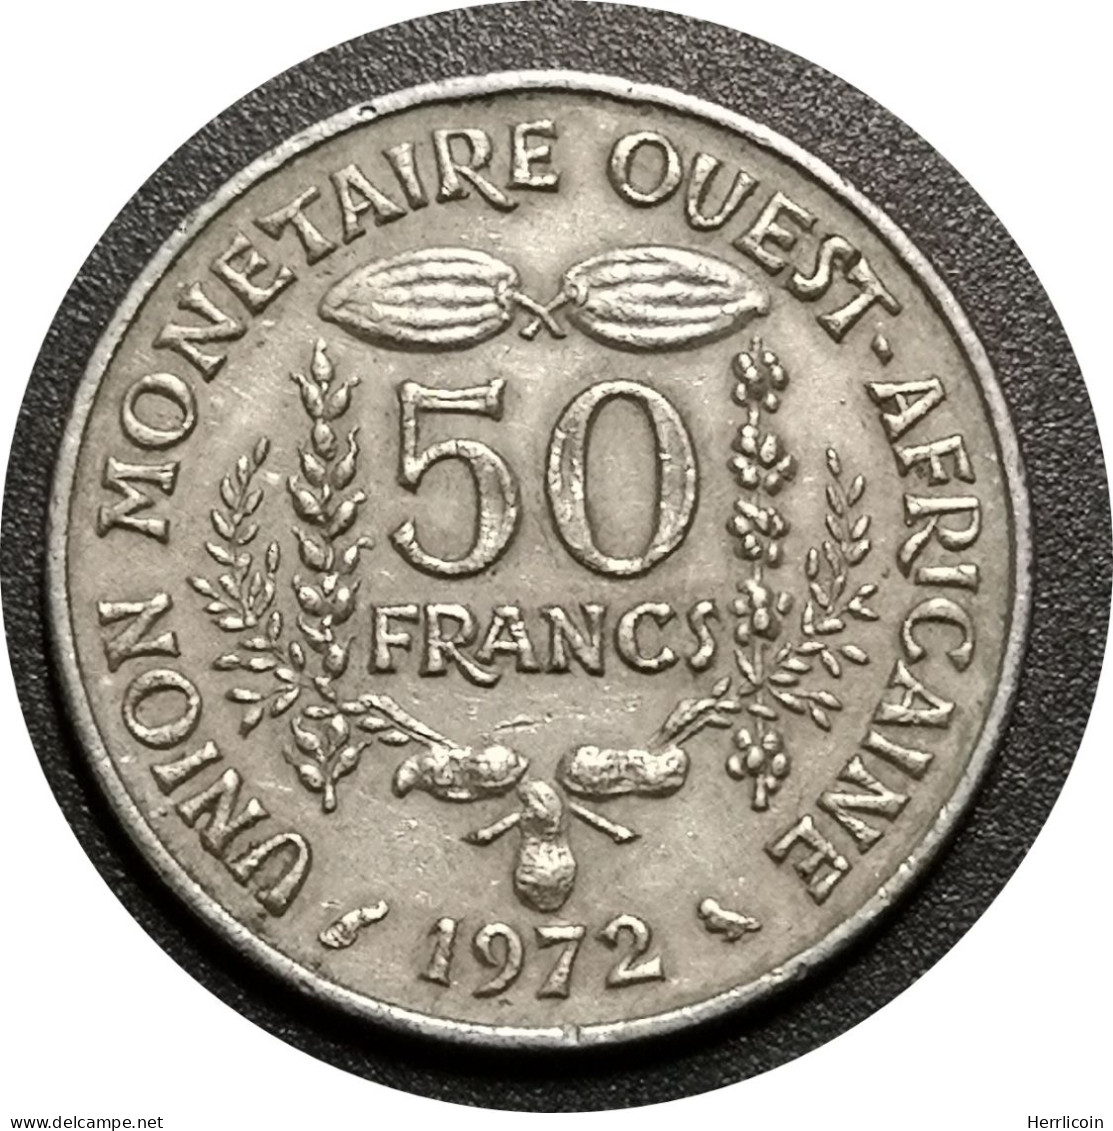 Monnaie Afrique De L'Ouest - 1972- 50 Francs - Other - Africa